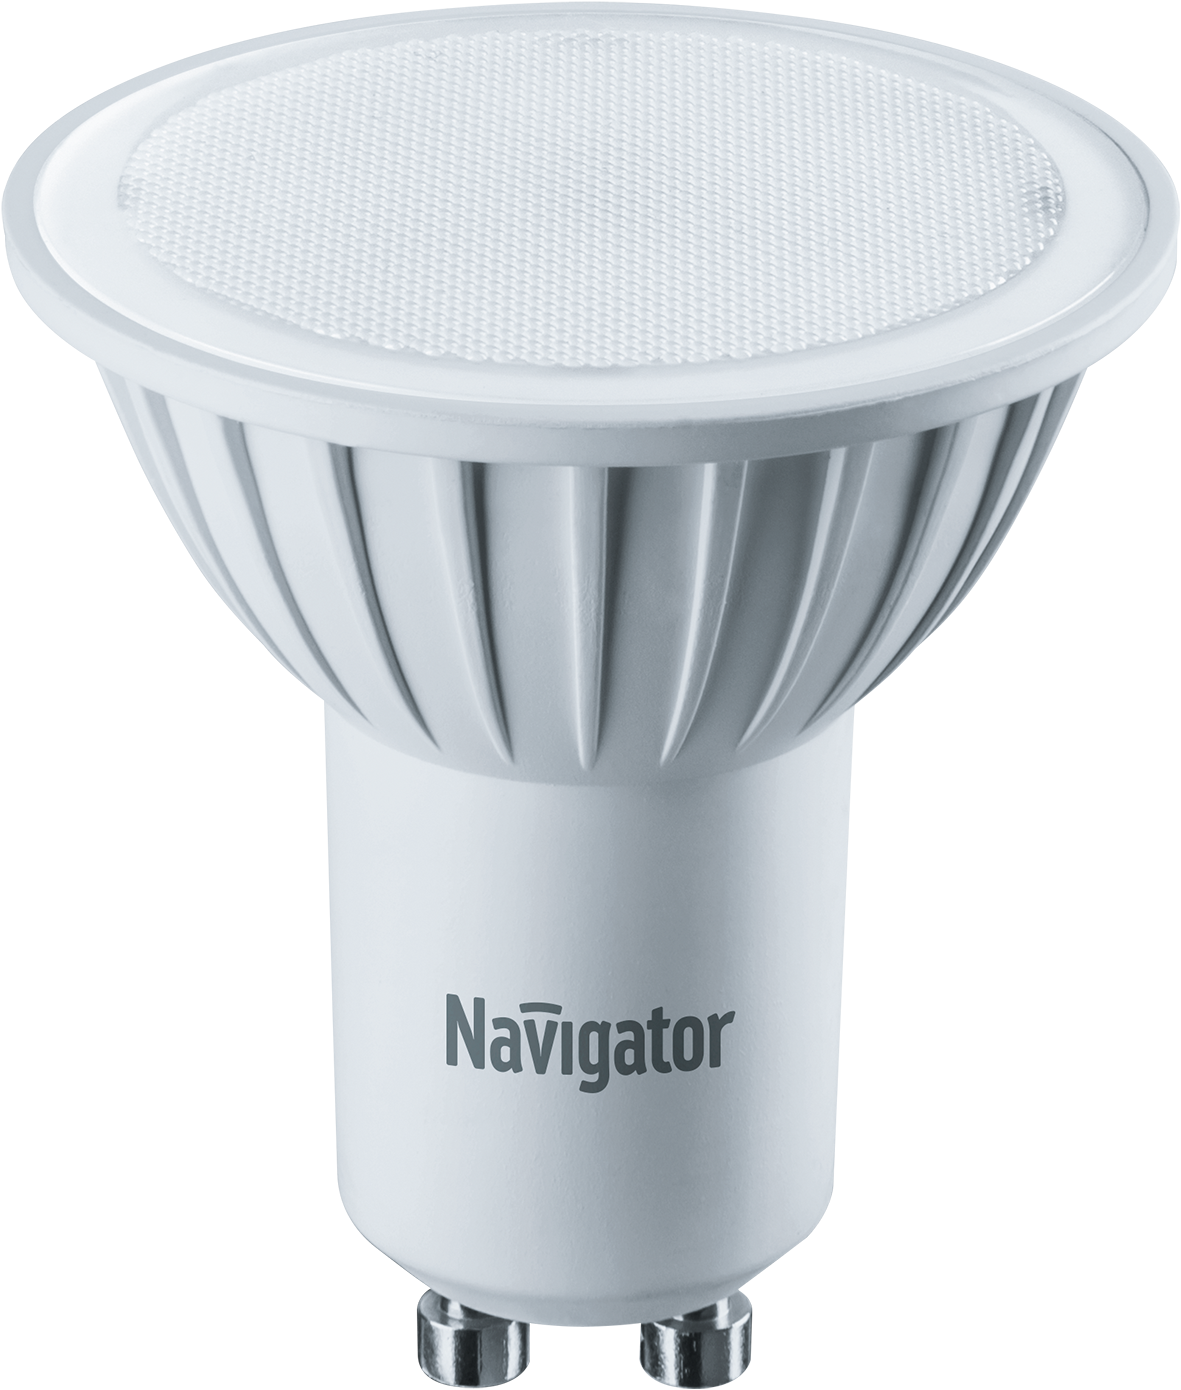 Изображение 94256 | Лампа светодиодная NLL-PAR16 3 Вт 230В GU10 d=51mm, тёплый 94256 Navigator